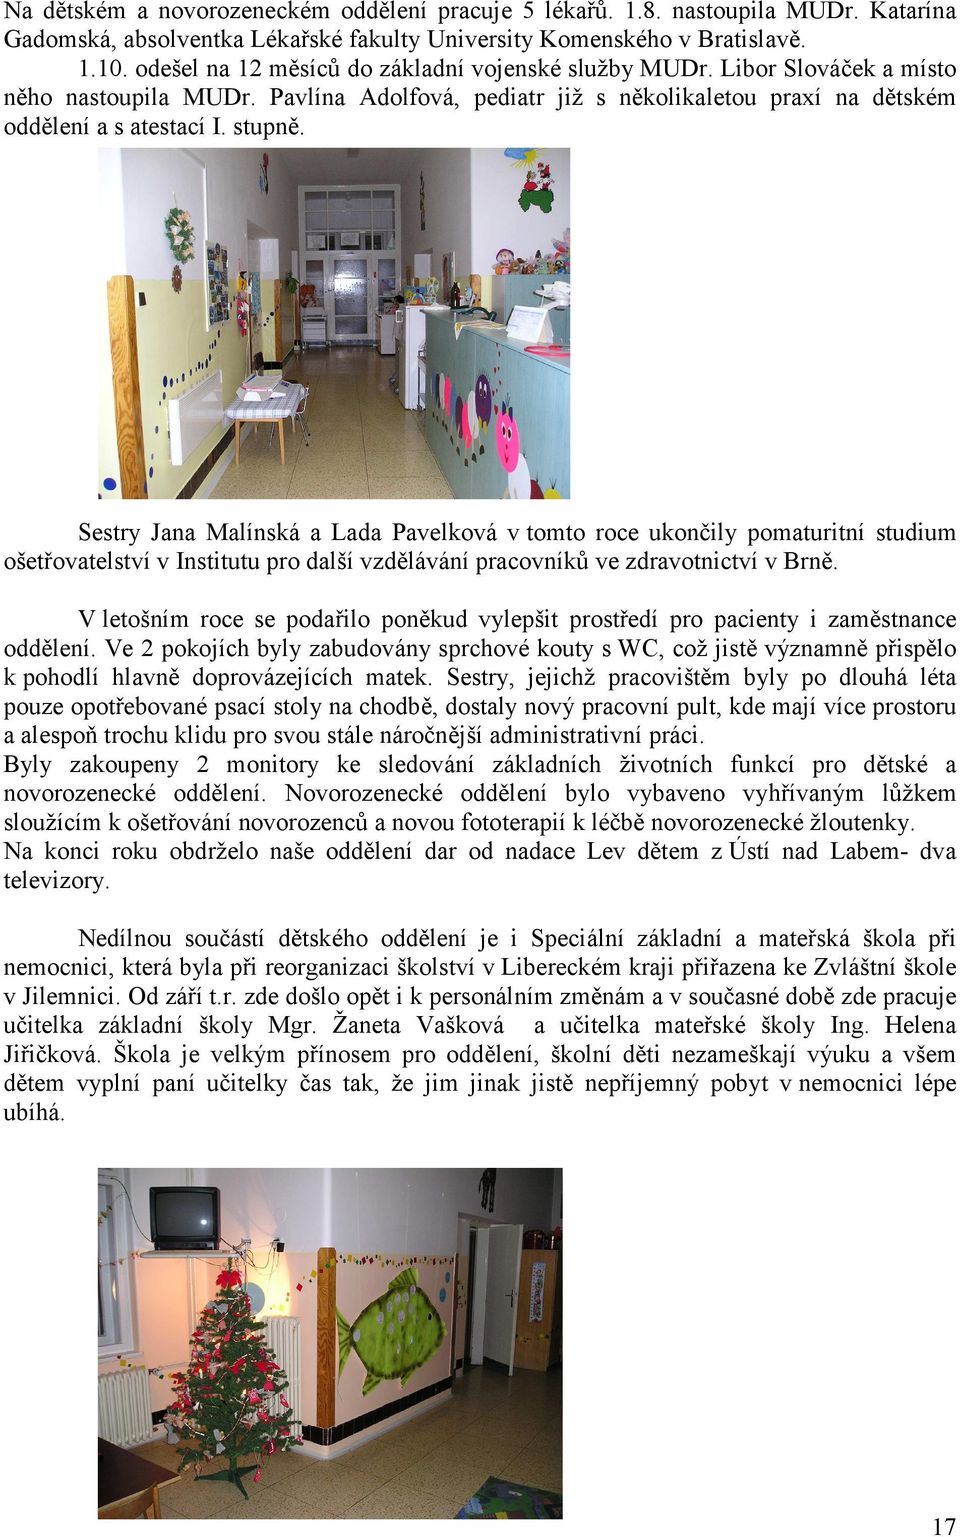 Sestry Jana Malínská a Lada Pavelková v tomto roce ukončily pomaturitní studium ošetřovatelství v Institutu pro další vzdělávání pracovníků ve zdravotnictví v Brně.